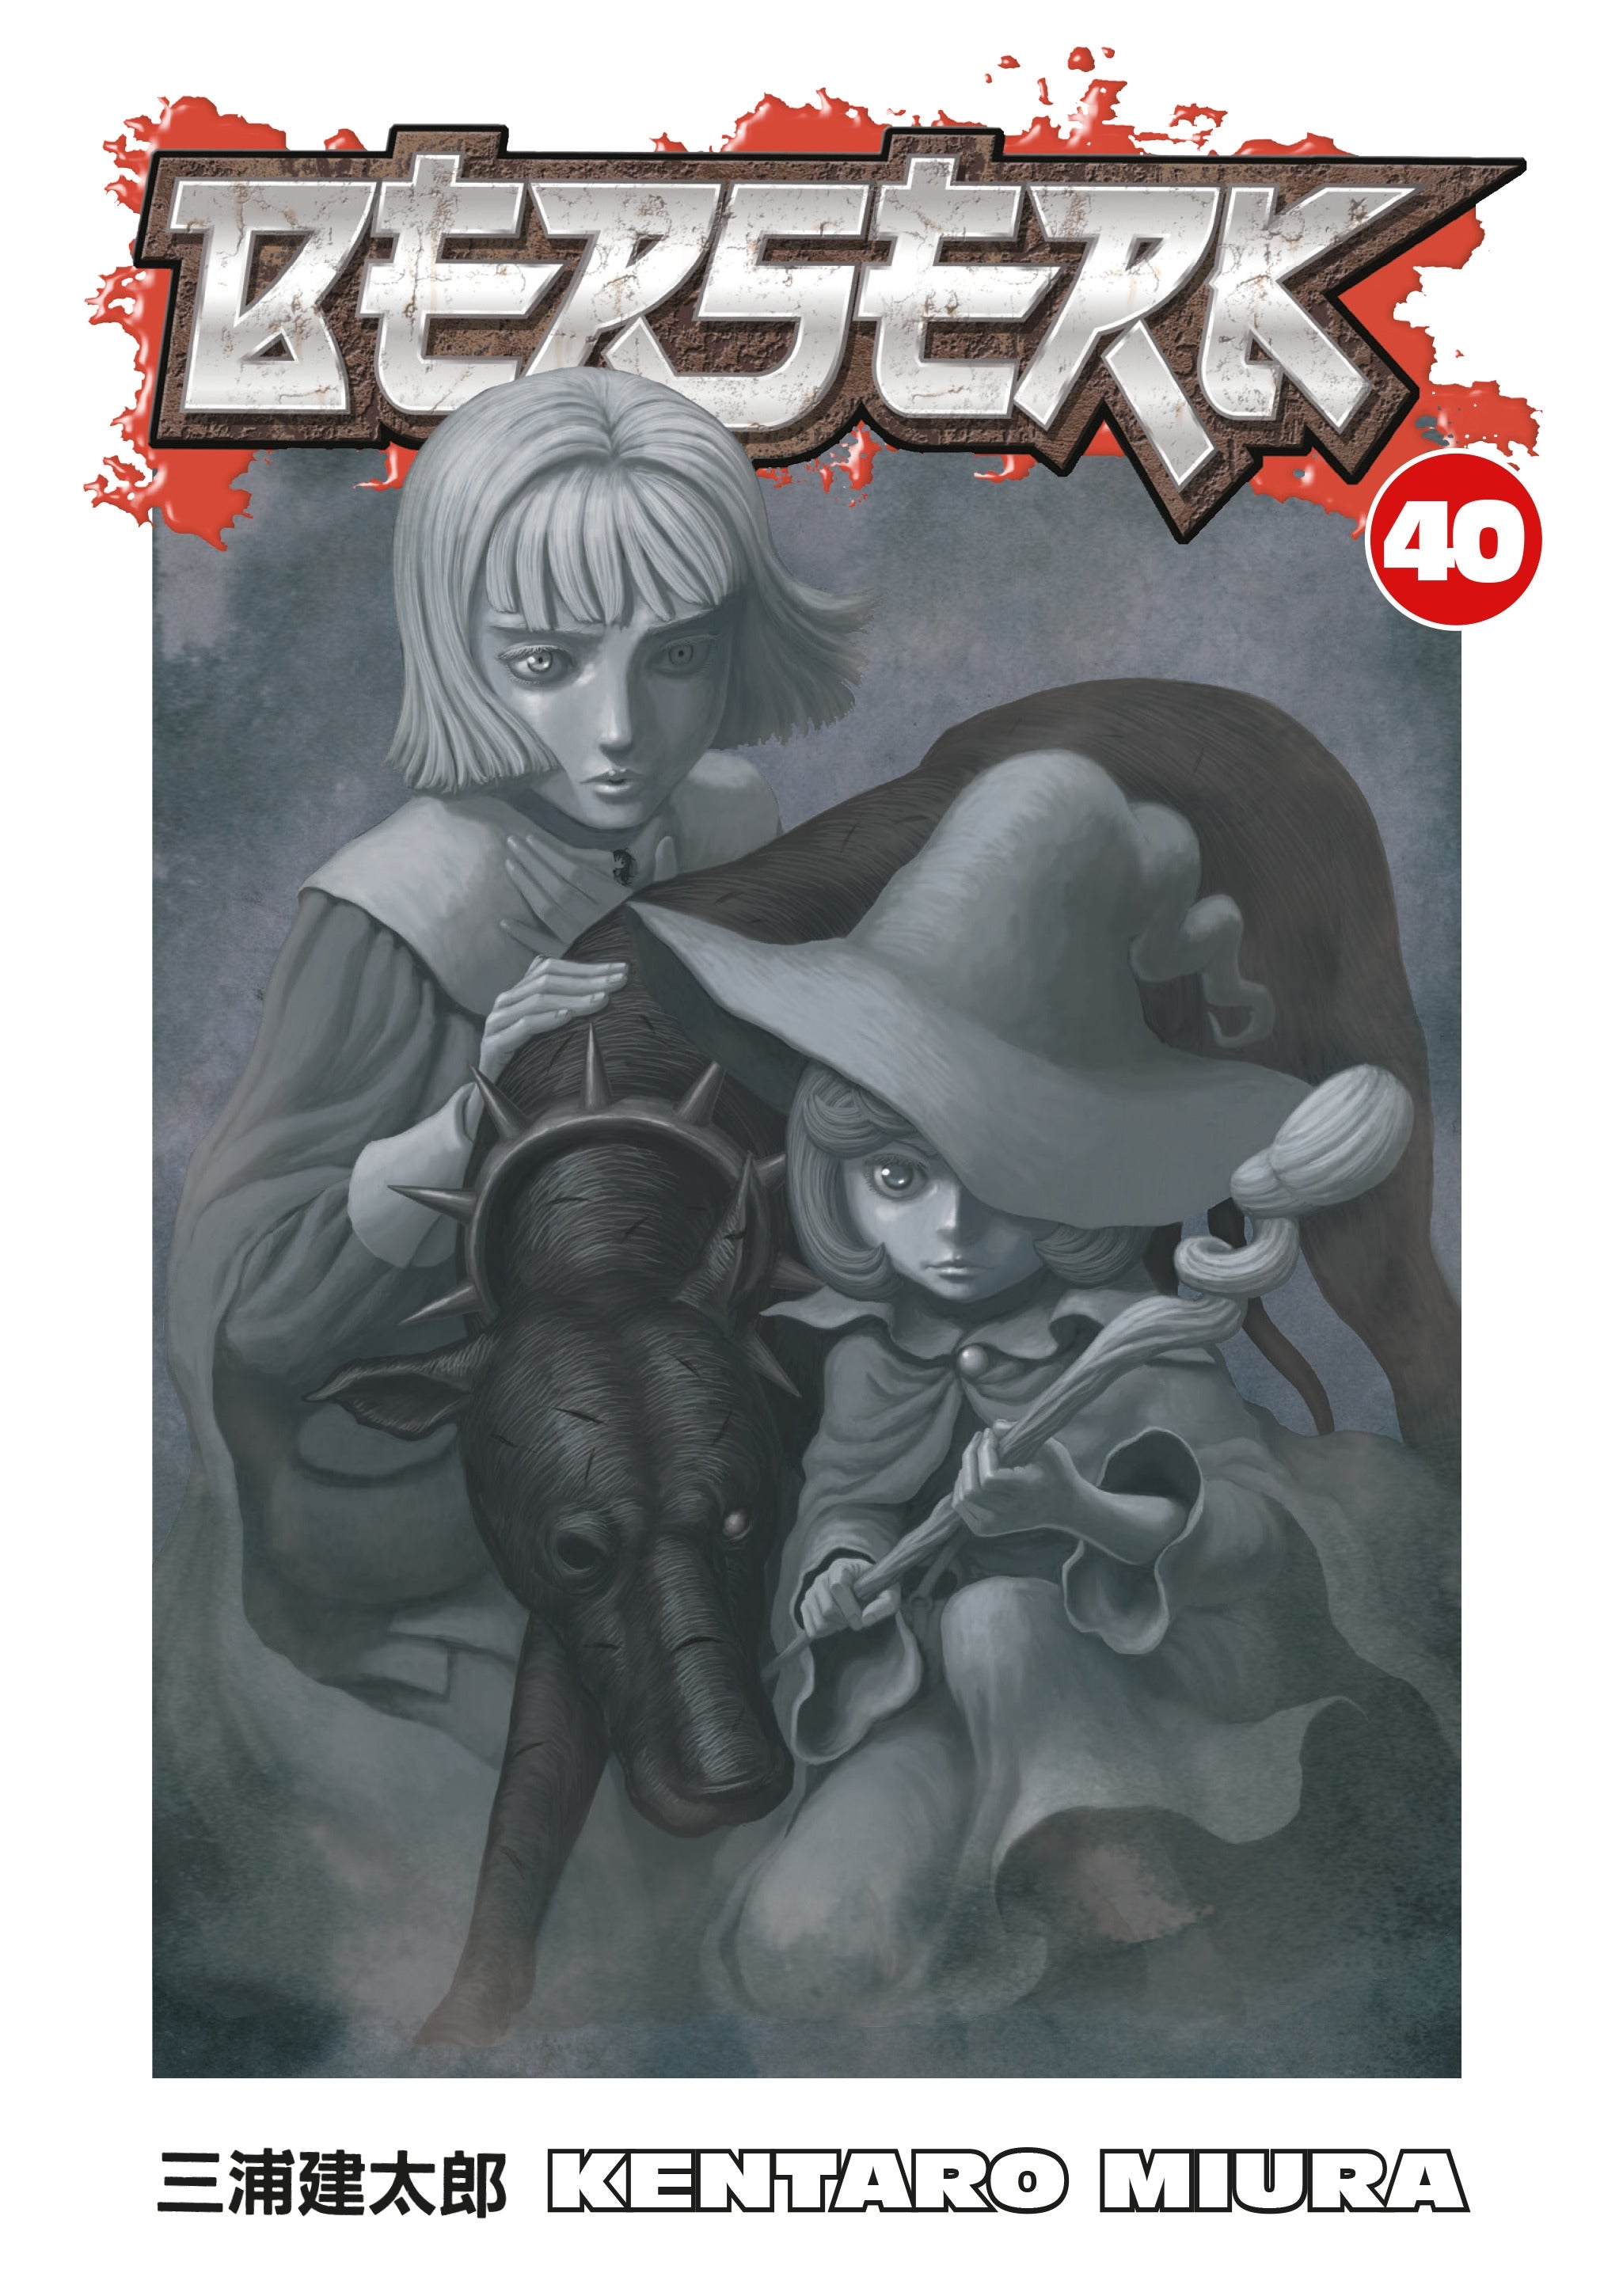 Berserk Vol. 40 (Manga)